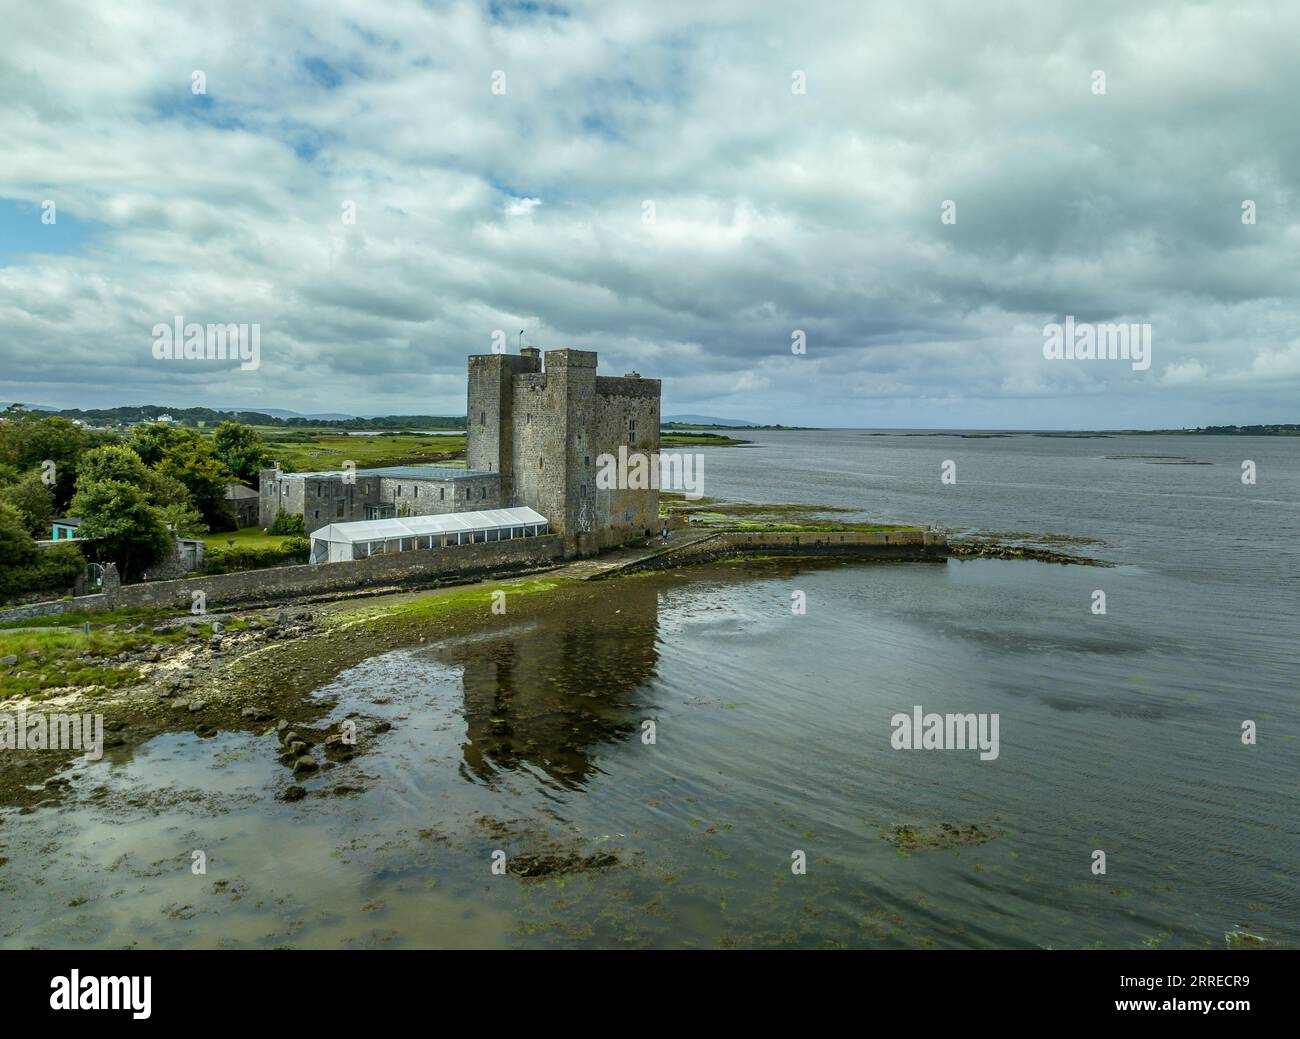 Vista aerea del castello di Oranmore, monumento nazionale di 800 anni, situato in una delle storiche insenature della baia di Galway Foto Stock